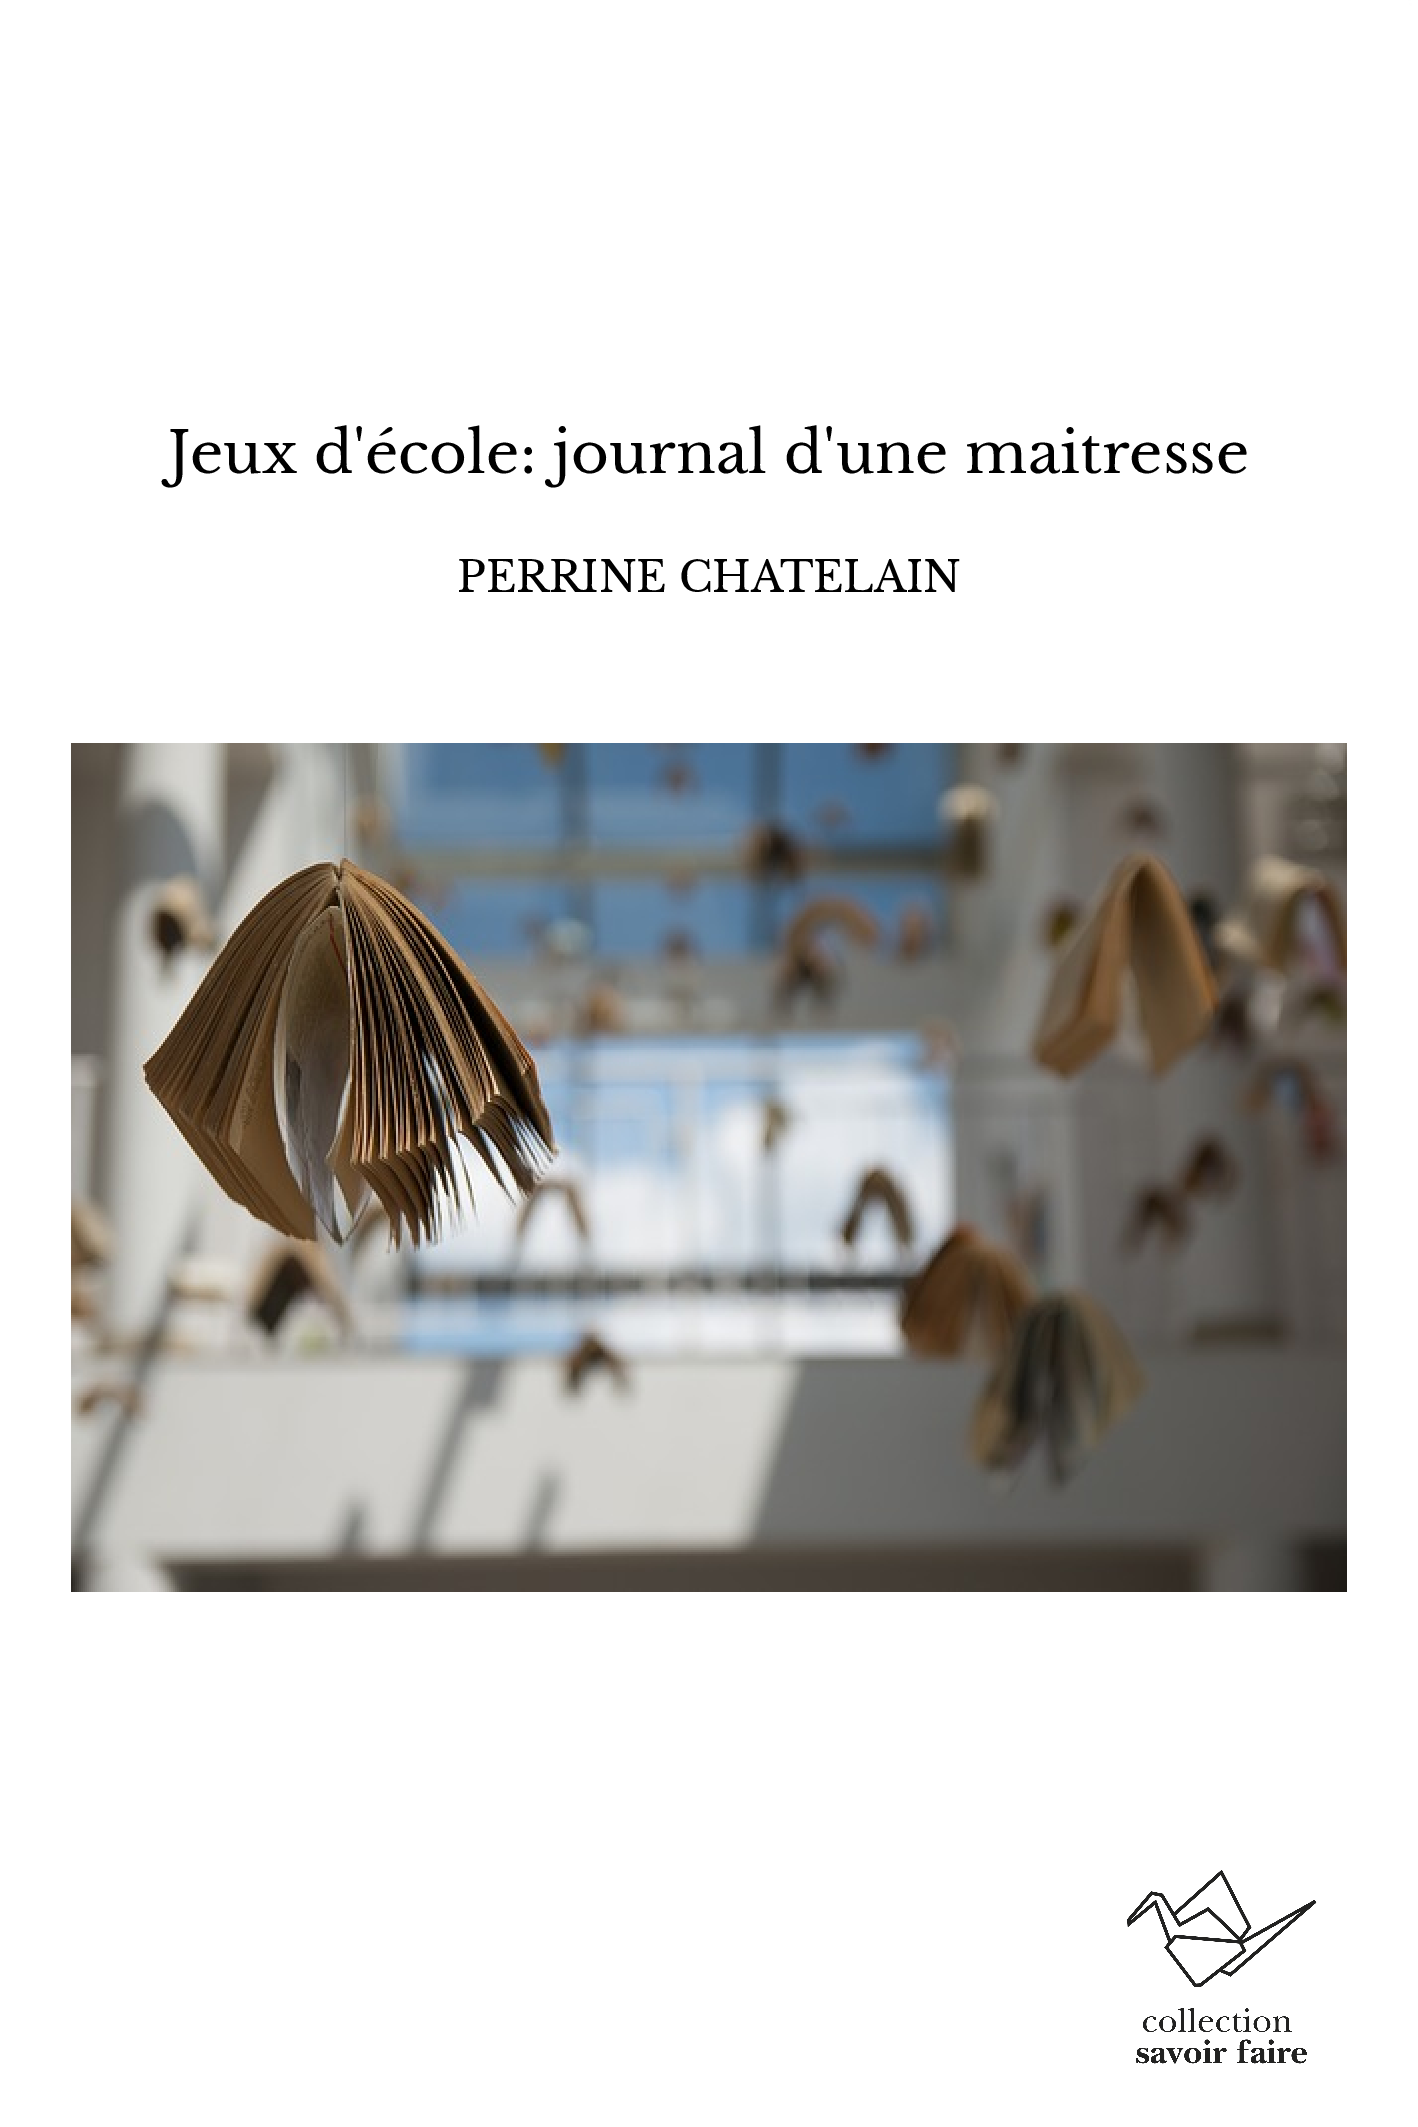 Jeux d'école: journal d'une maitresse - Perrine Chatelain